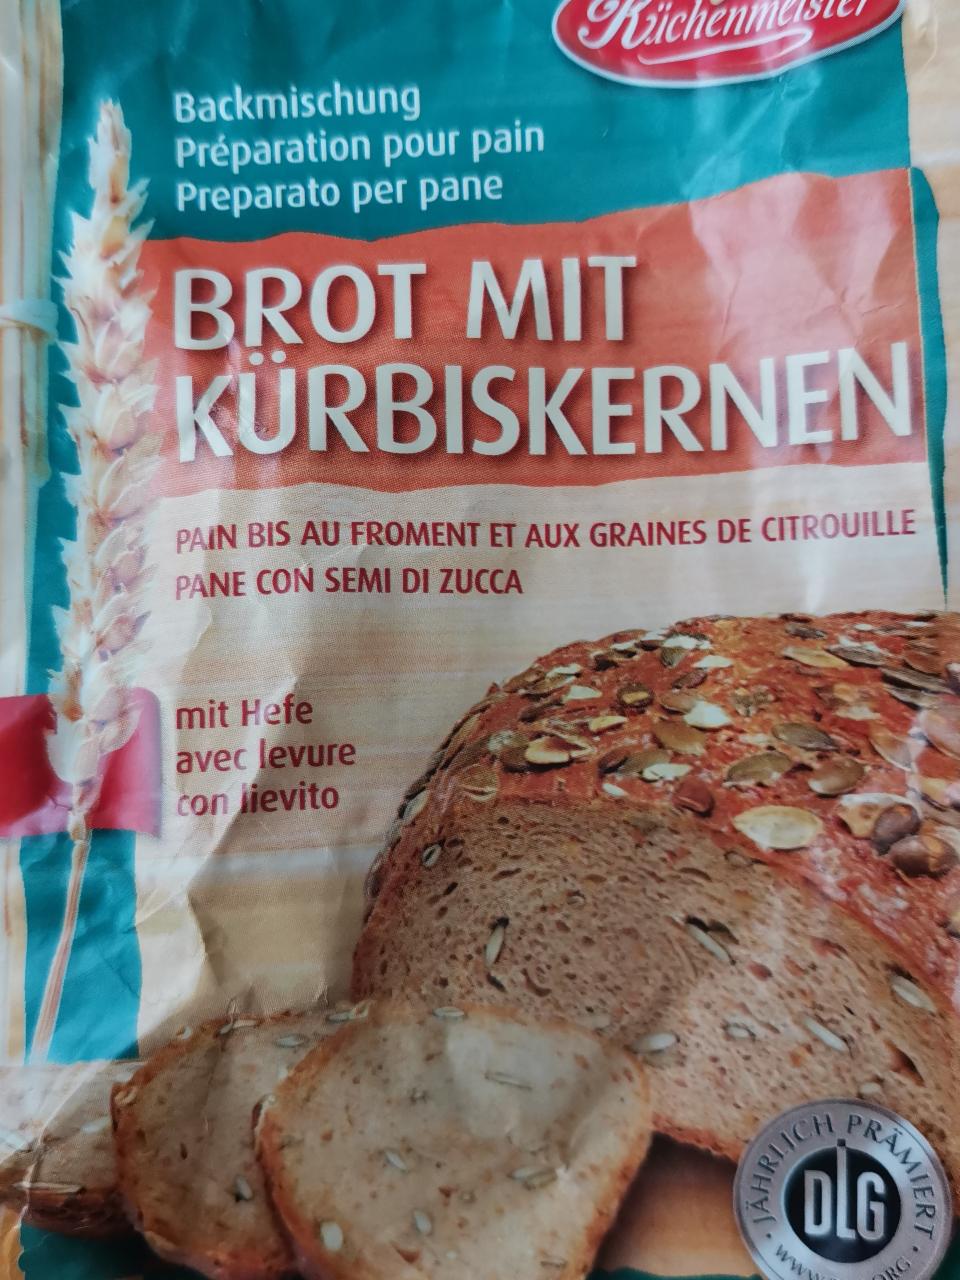 Fotografie - Backmischung Brot mit Kürbiskernen Küchenmeister